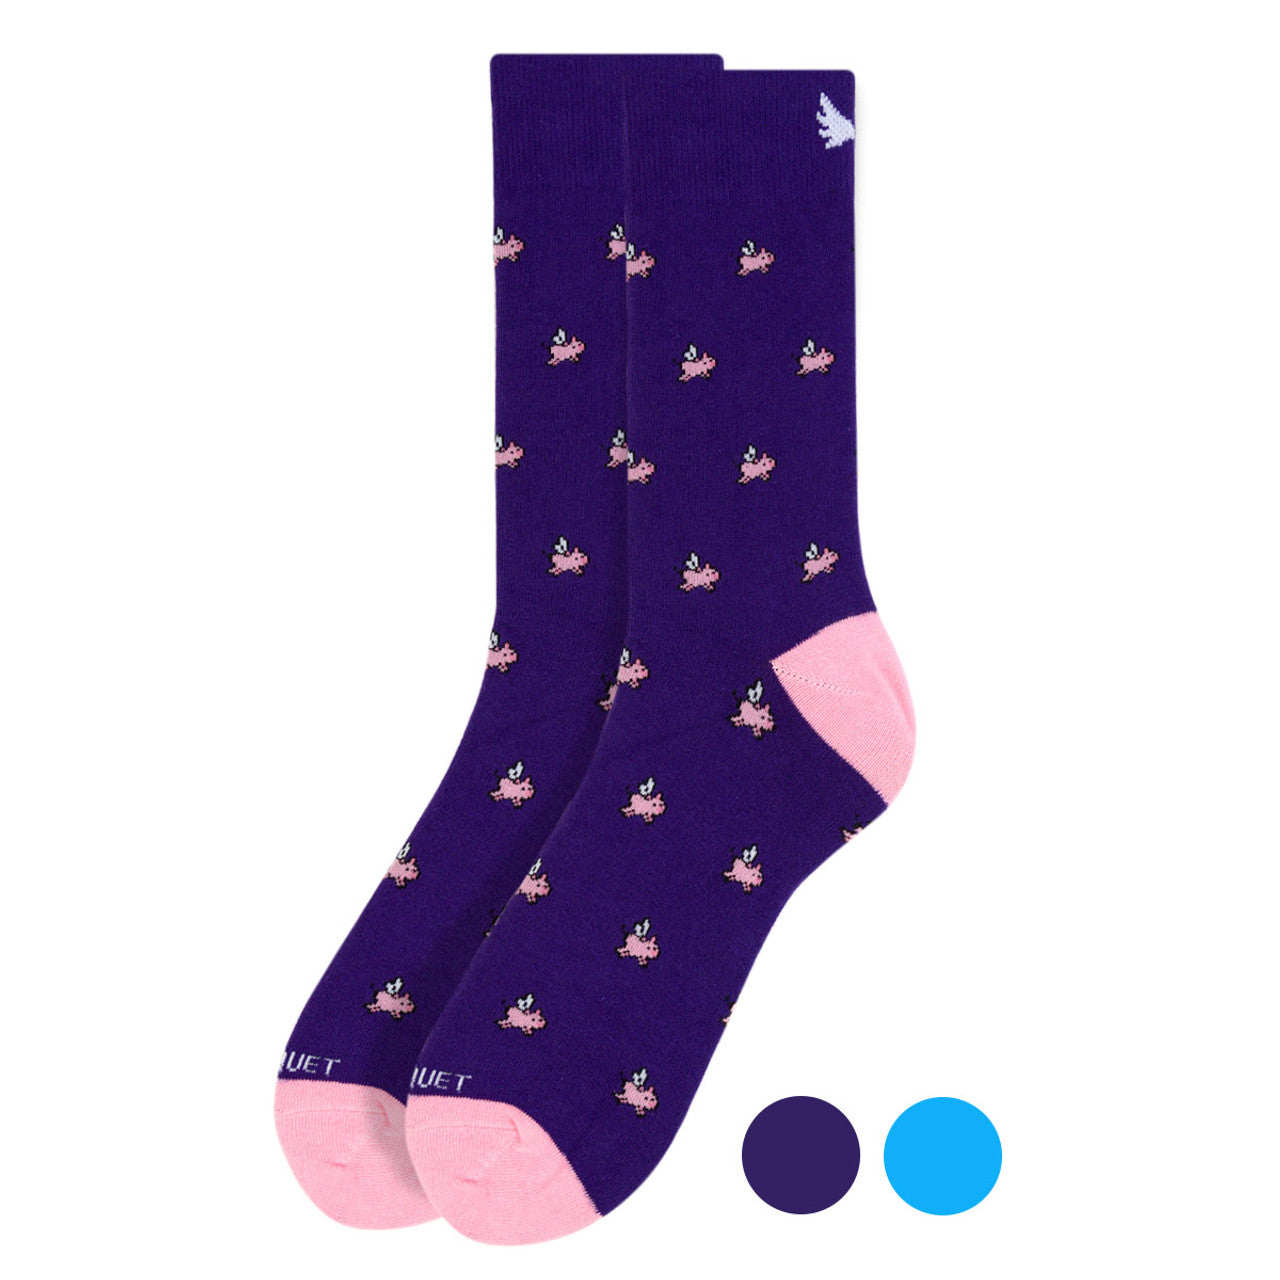 Selini New York - Socks Mens Flying Pig Novelty